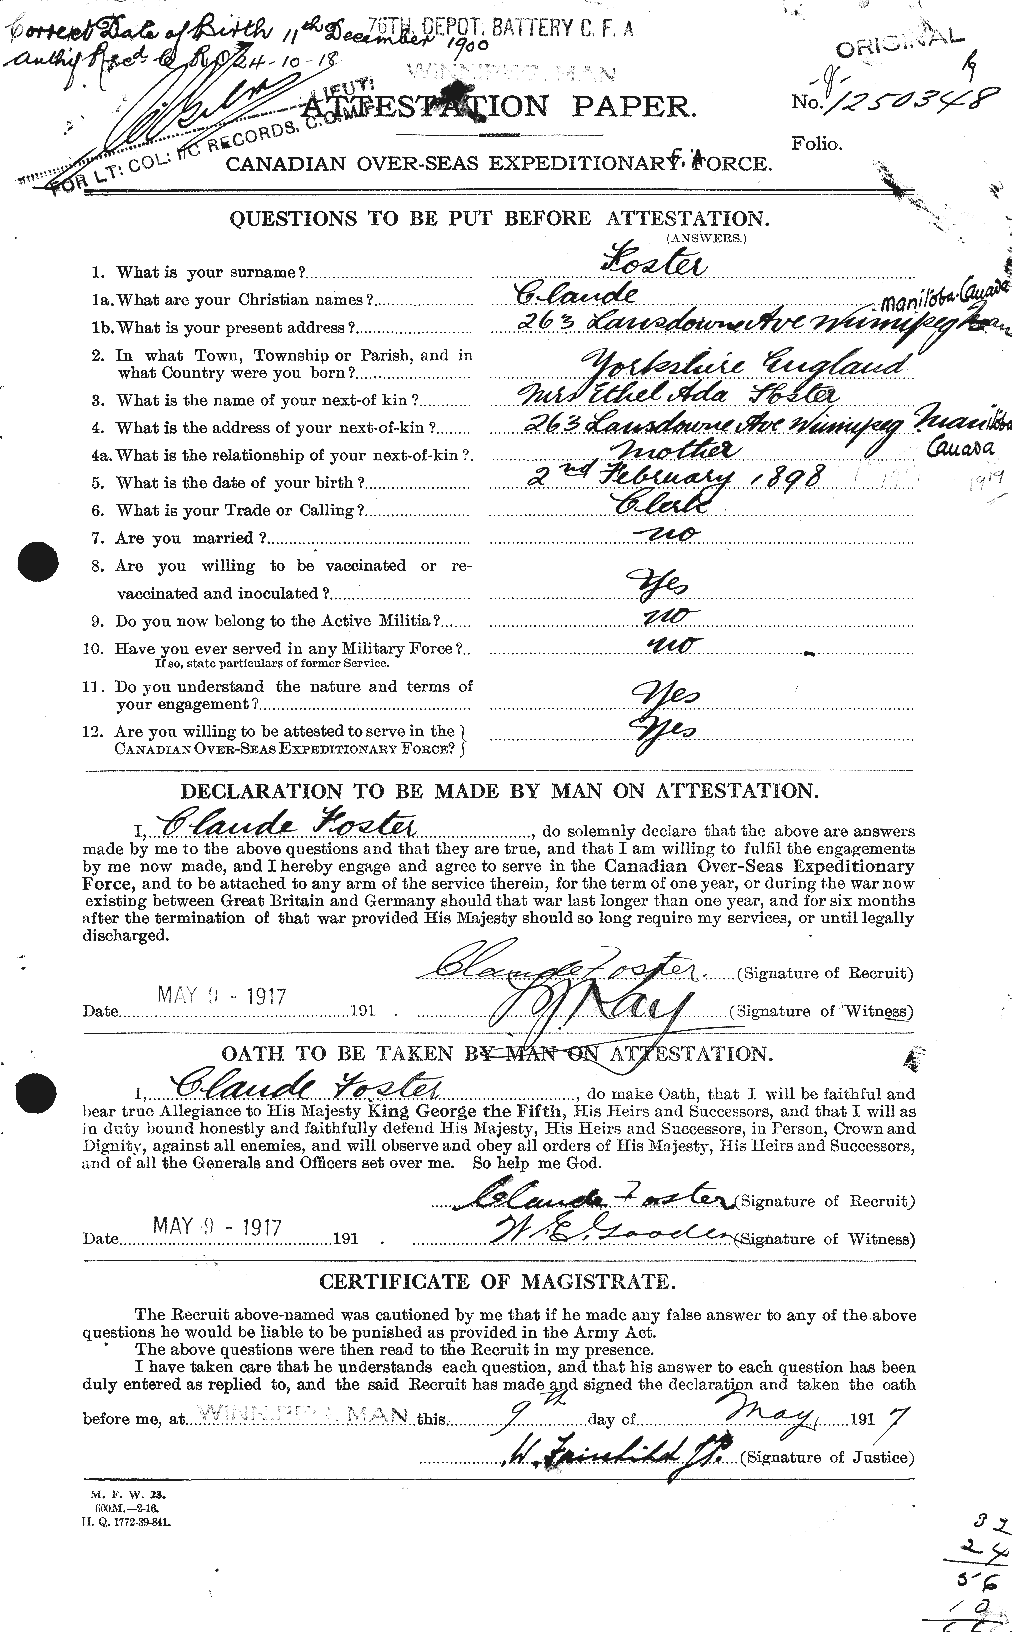 Dossiers du Personnel de la Première Guerre mondiale - CEC 330541a